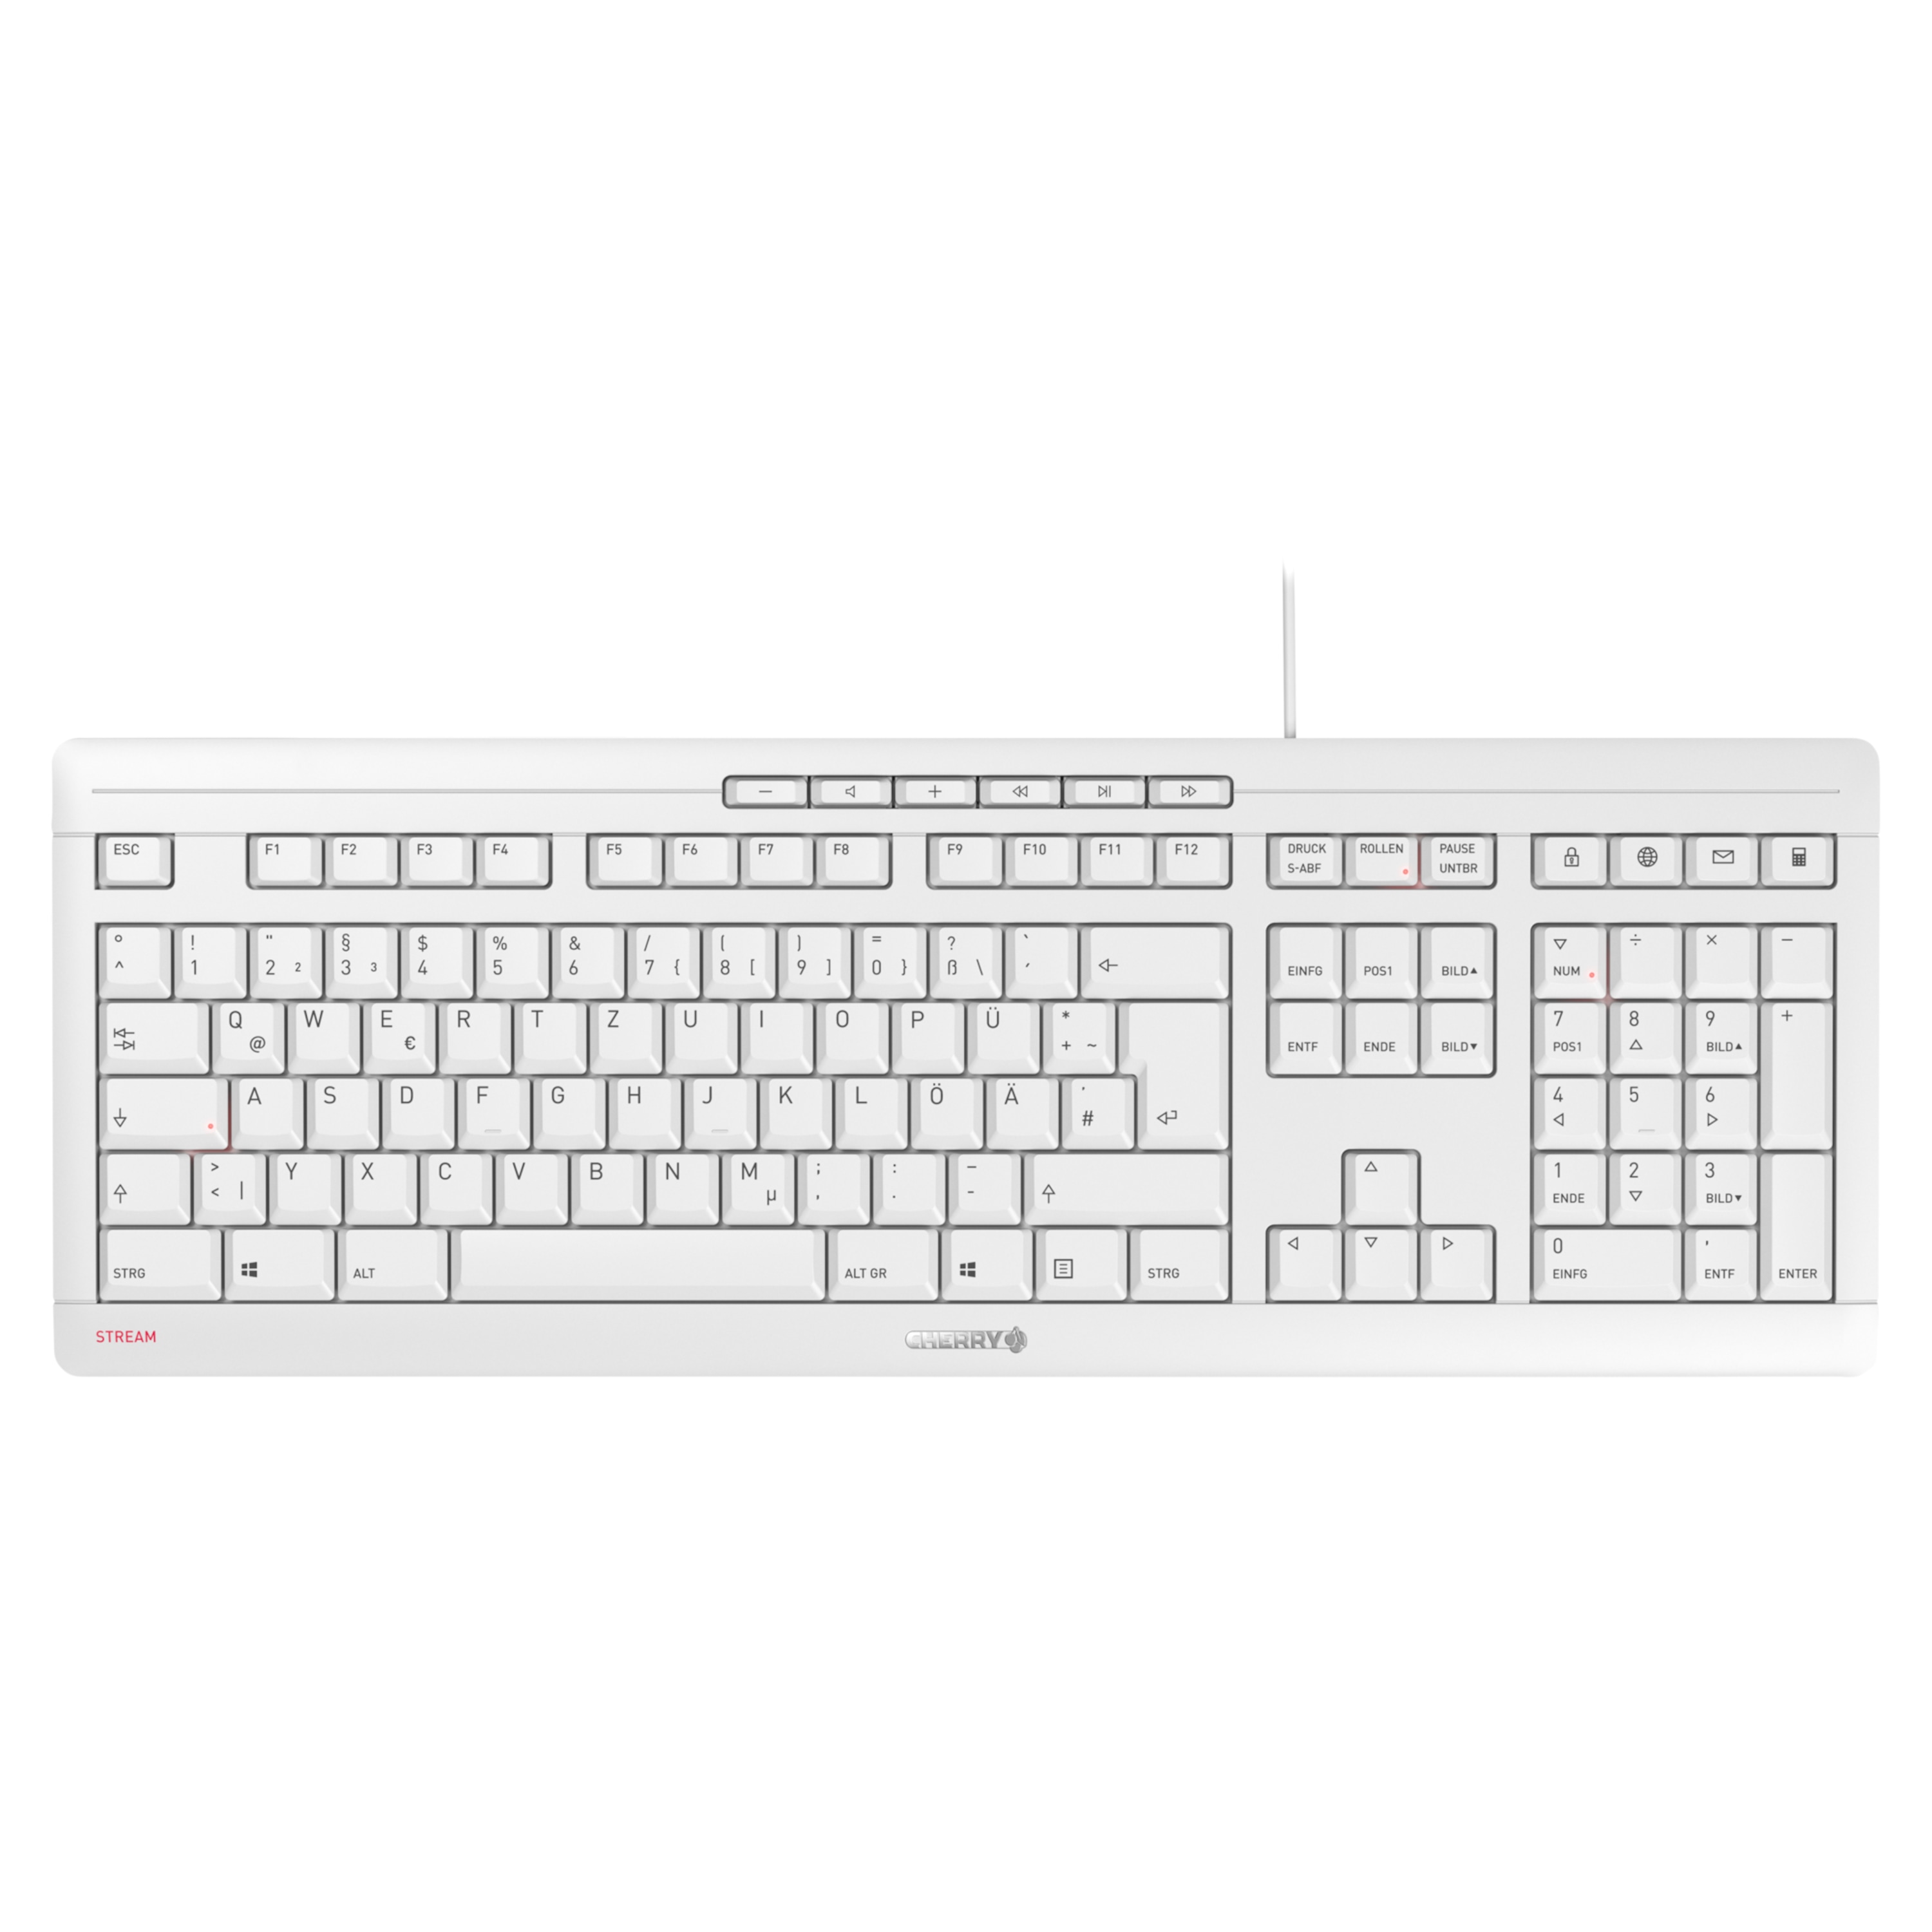 CHERRY STREAM Keyboard JK-8500DE-0, flüsterleise Tastatur mit 10 Office & Multimedia-Tasten, SX-Scherenmechanik, flaches & modernes Design